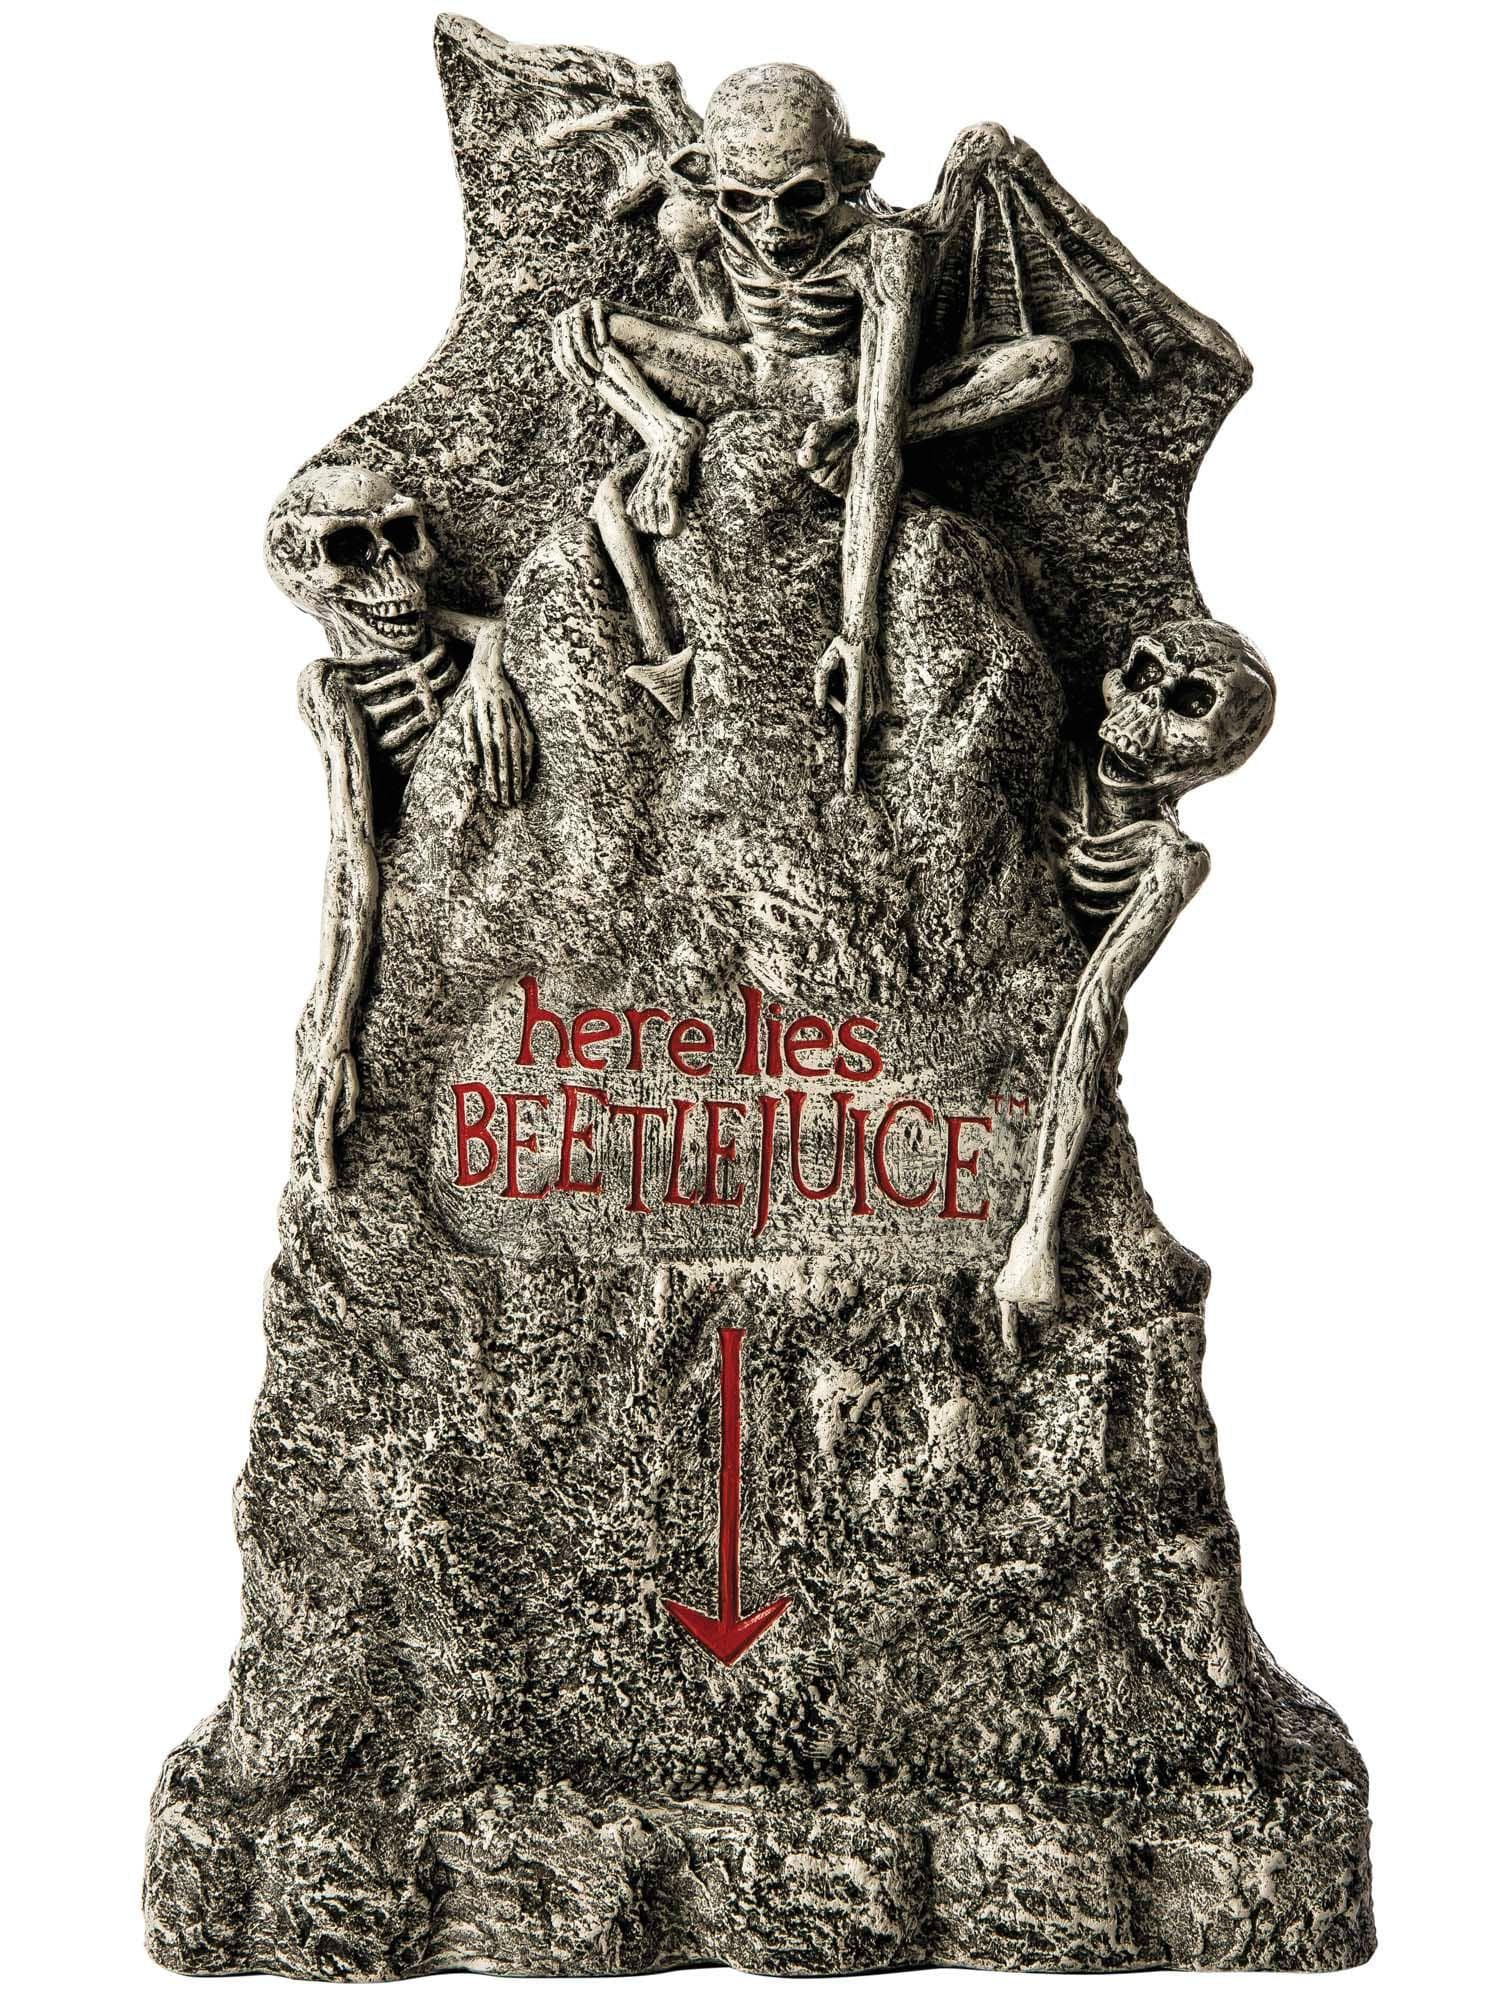 37-inch Beetlejuice Tombstone Graveyard Prop - costumes.com